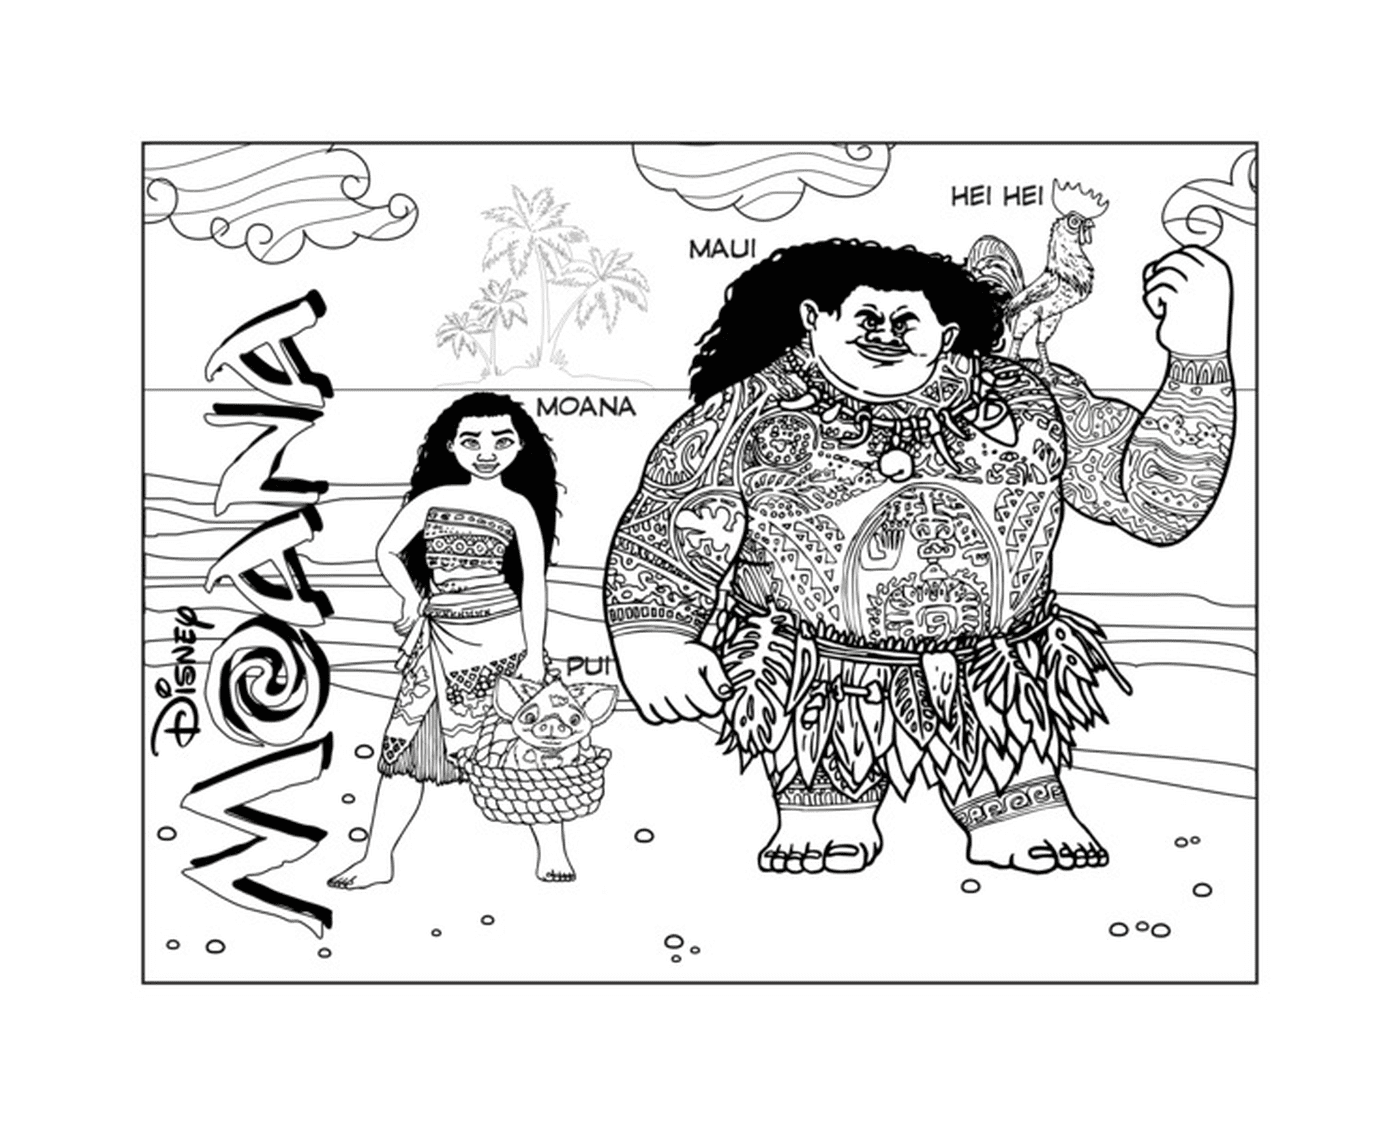  Moana e Maui, duo avventuriero 